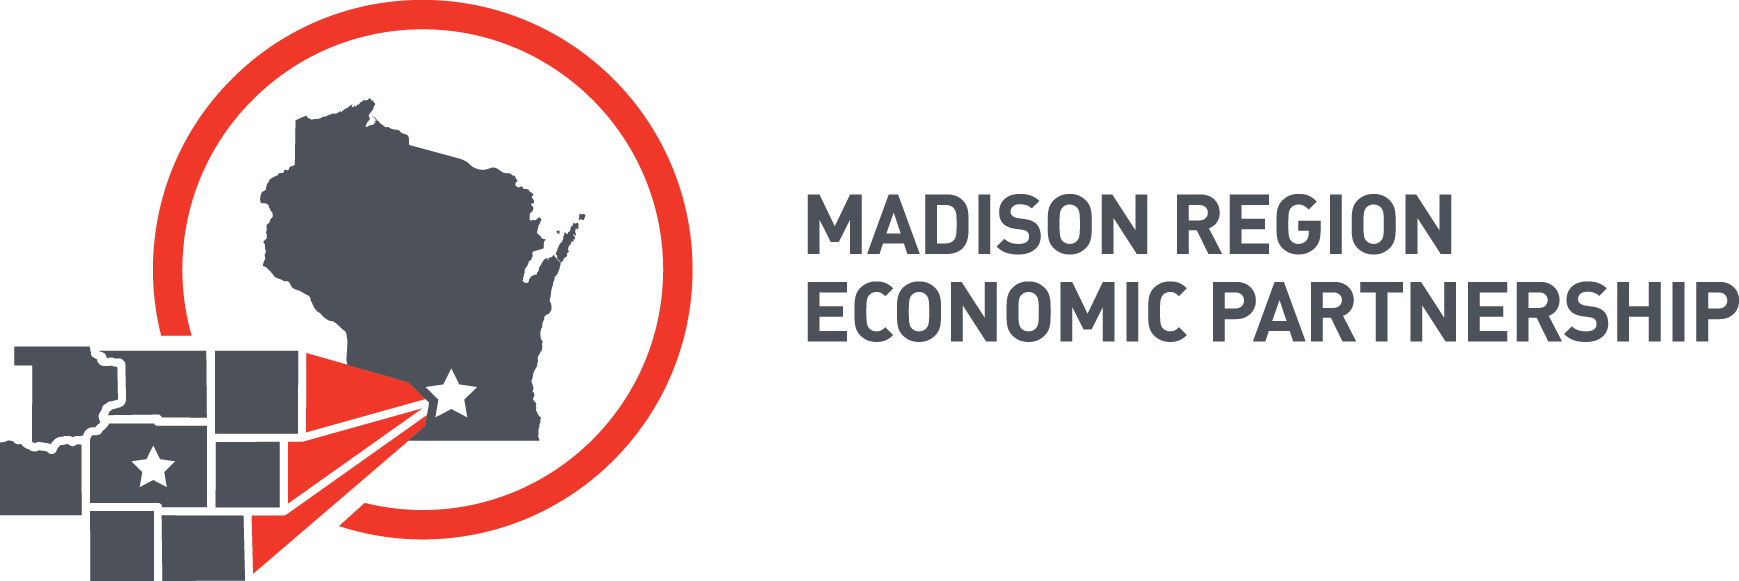 madison region economic partnership